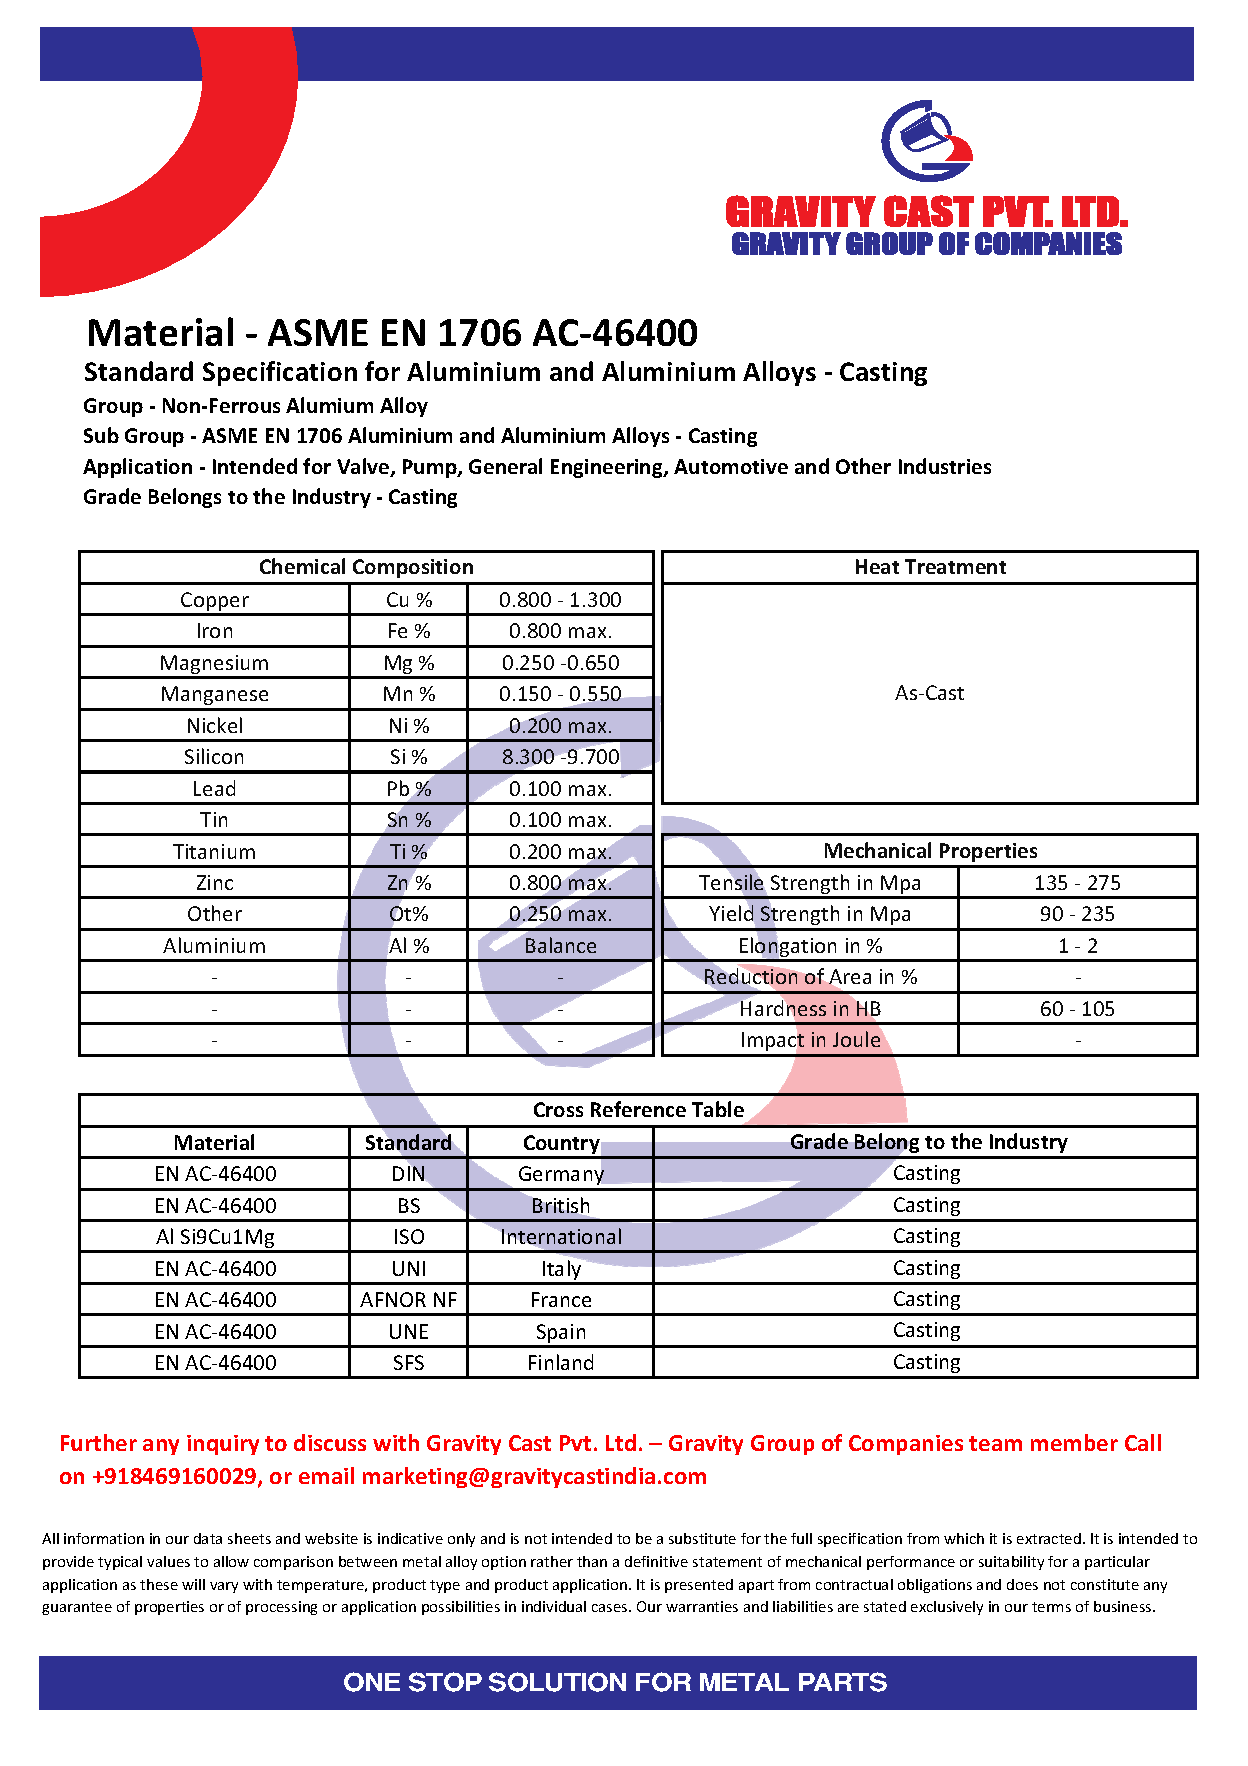 ASME EN 1706 AC-46400.pdf